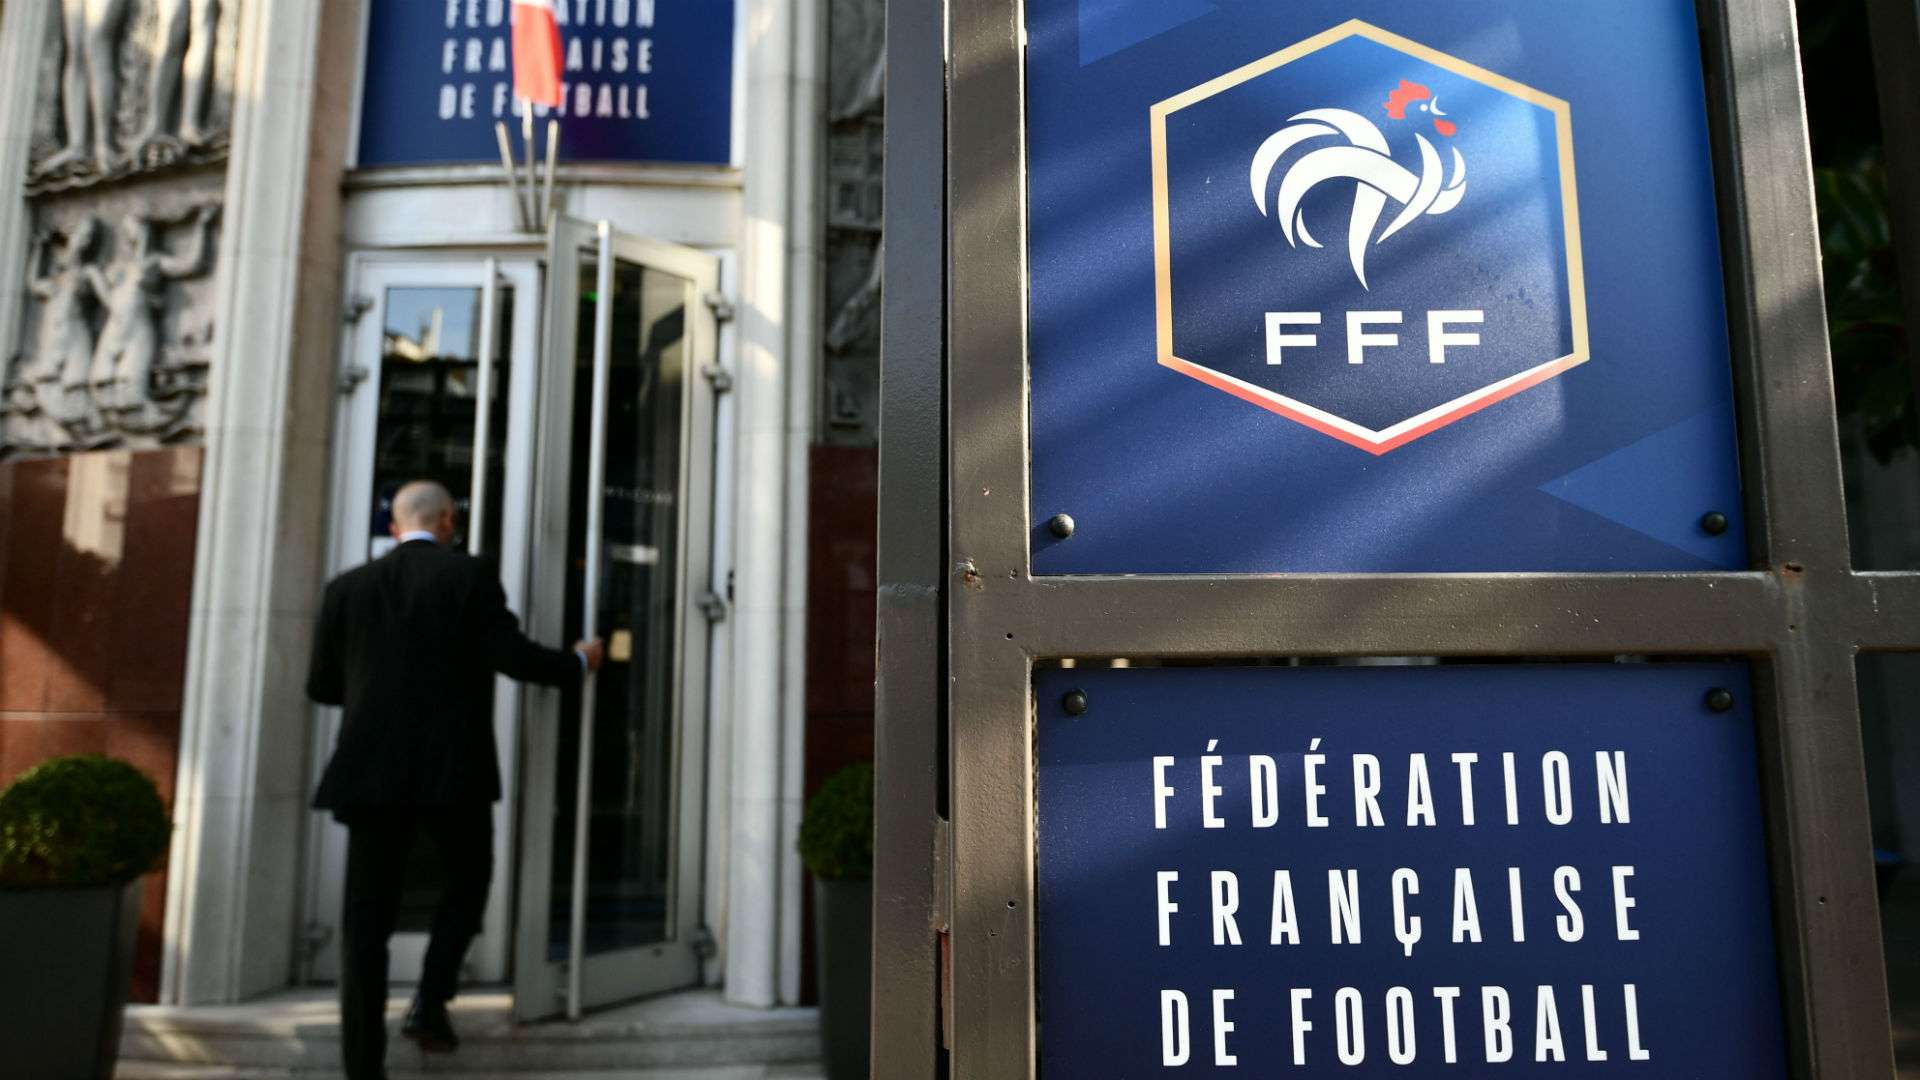 FFF French federation